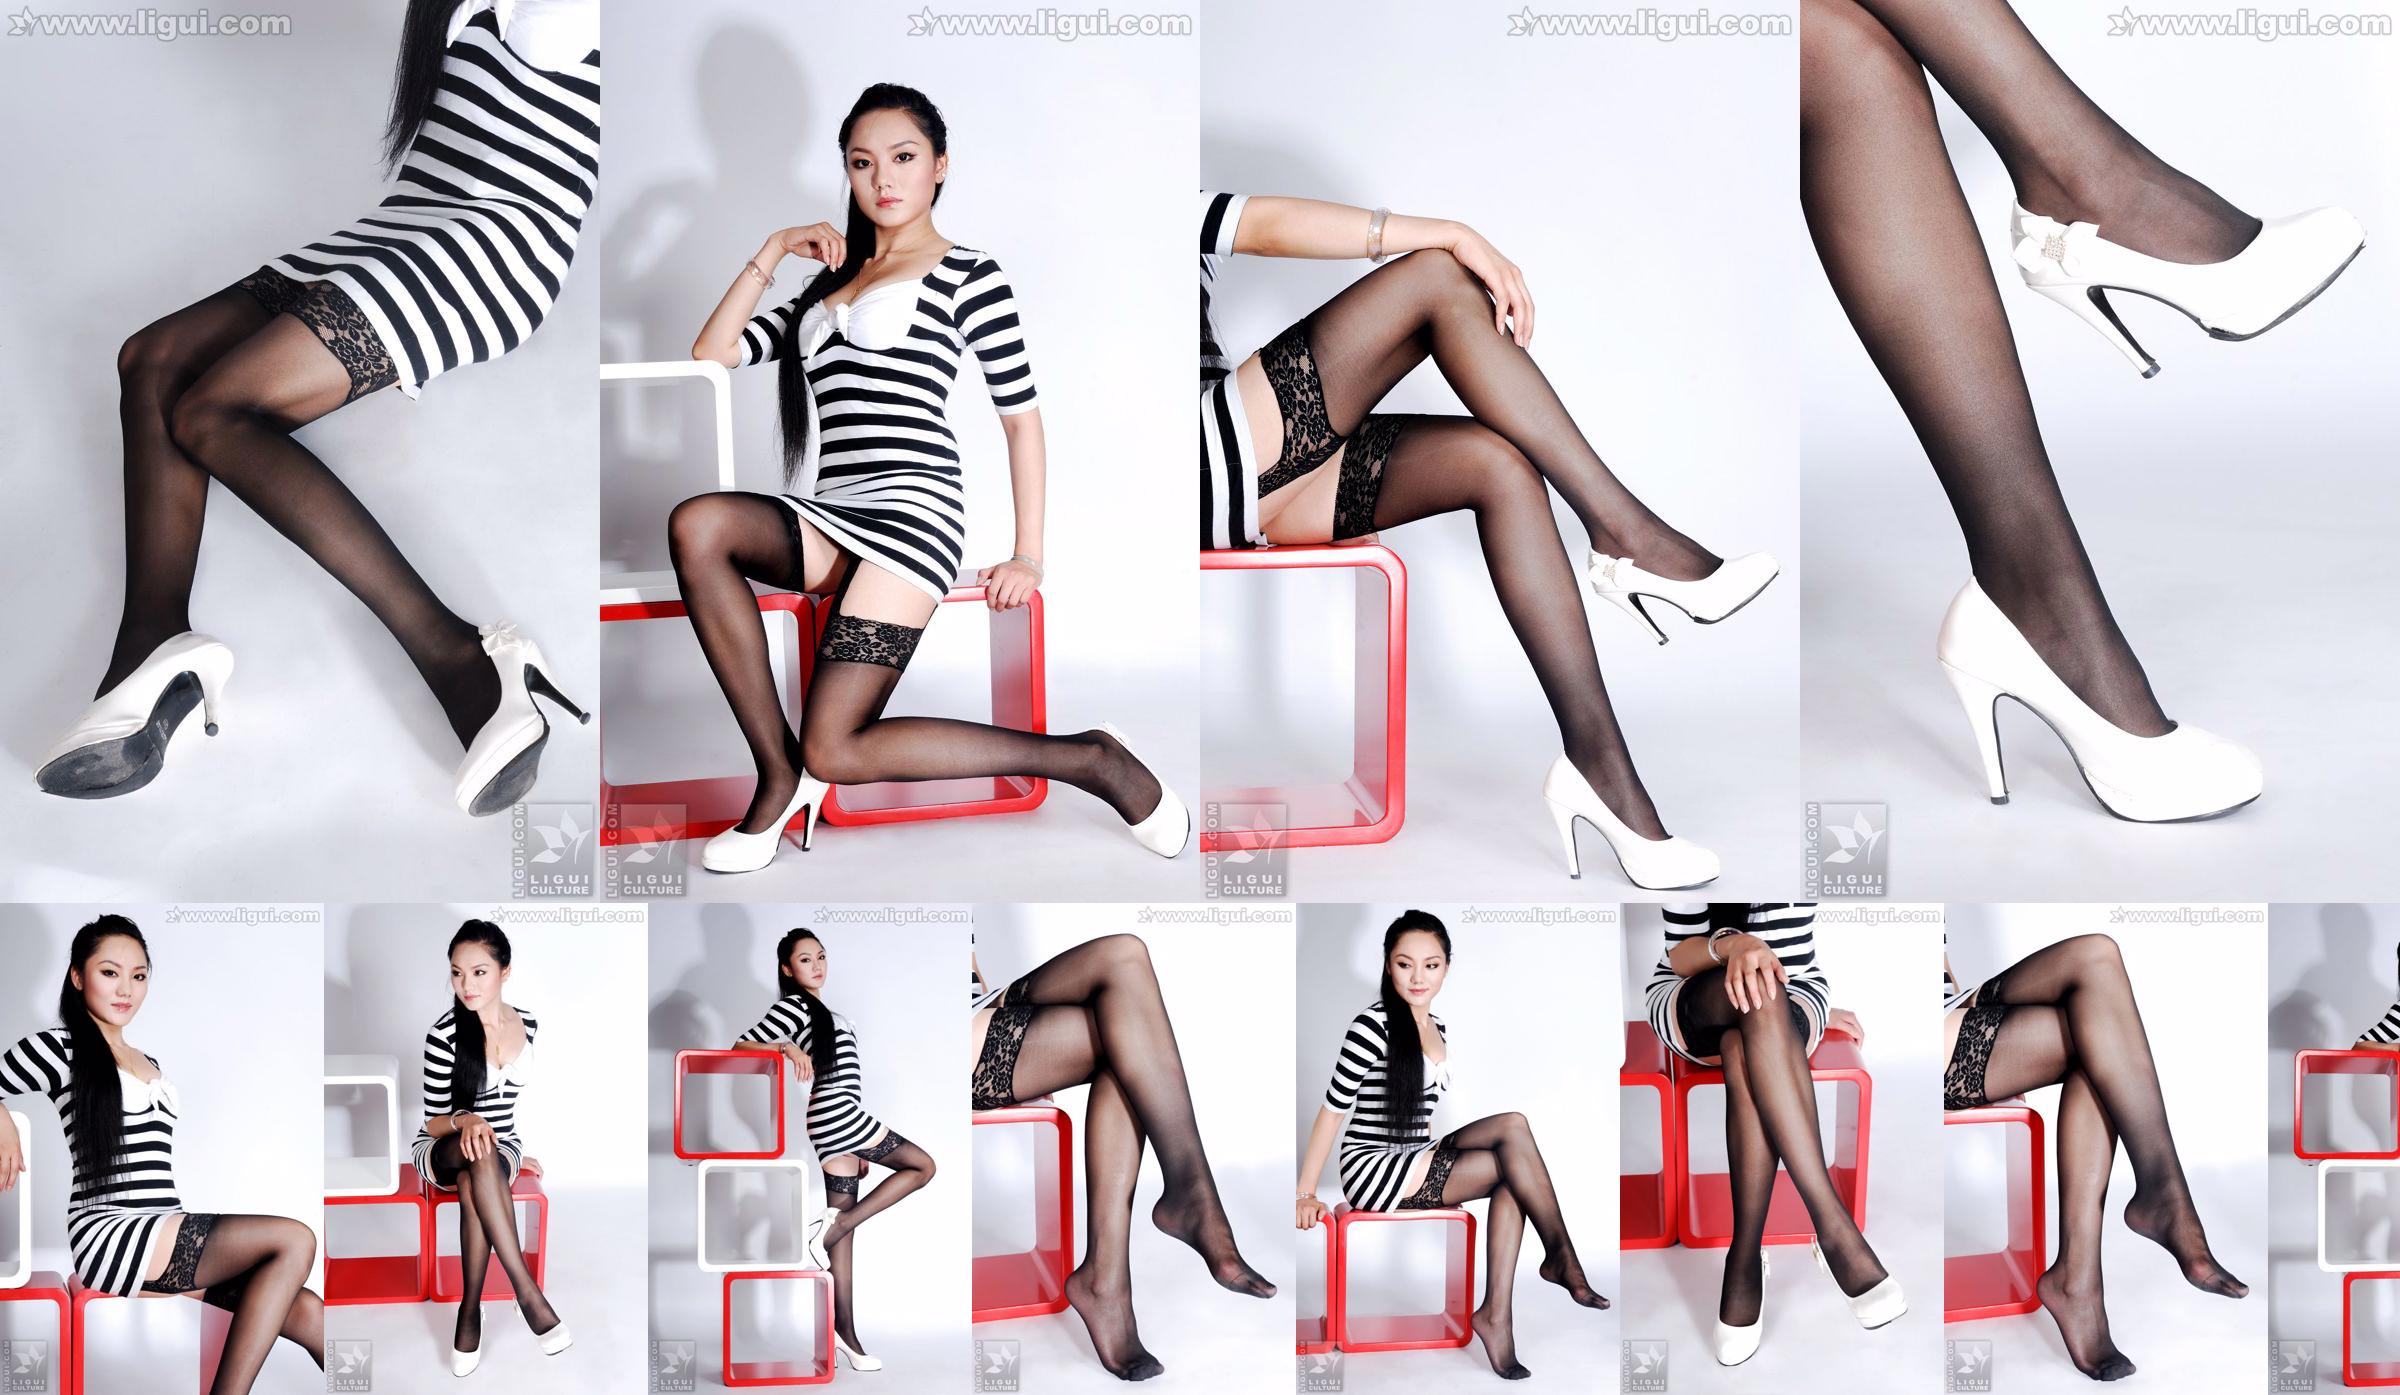 นางแบบ Yang Zi "The Charm of Stockings in Simple Home Decoration" [丽柜 LiGui] รูปถ่ายขาสวยและเท้าหยก No.844e29 หน้า 1